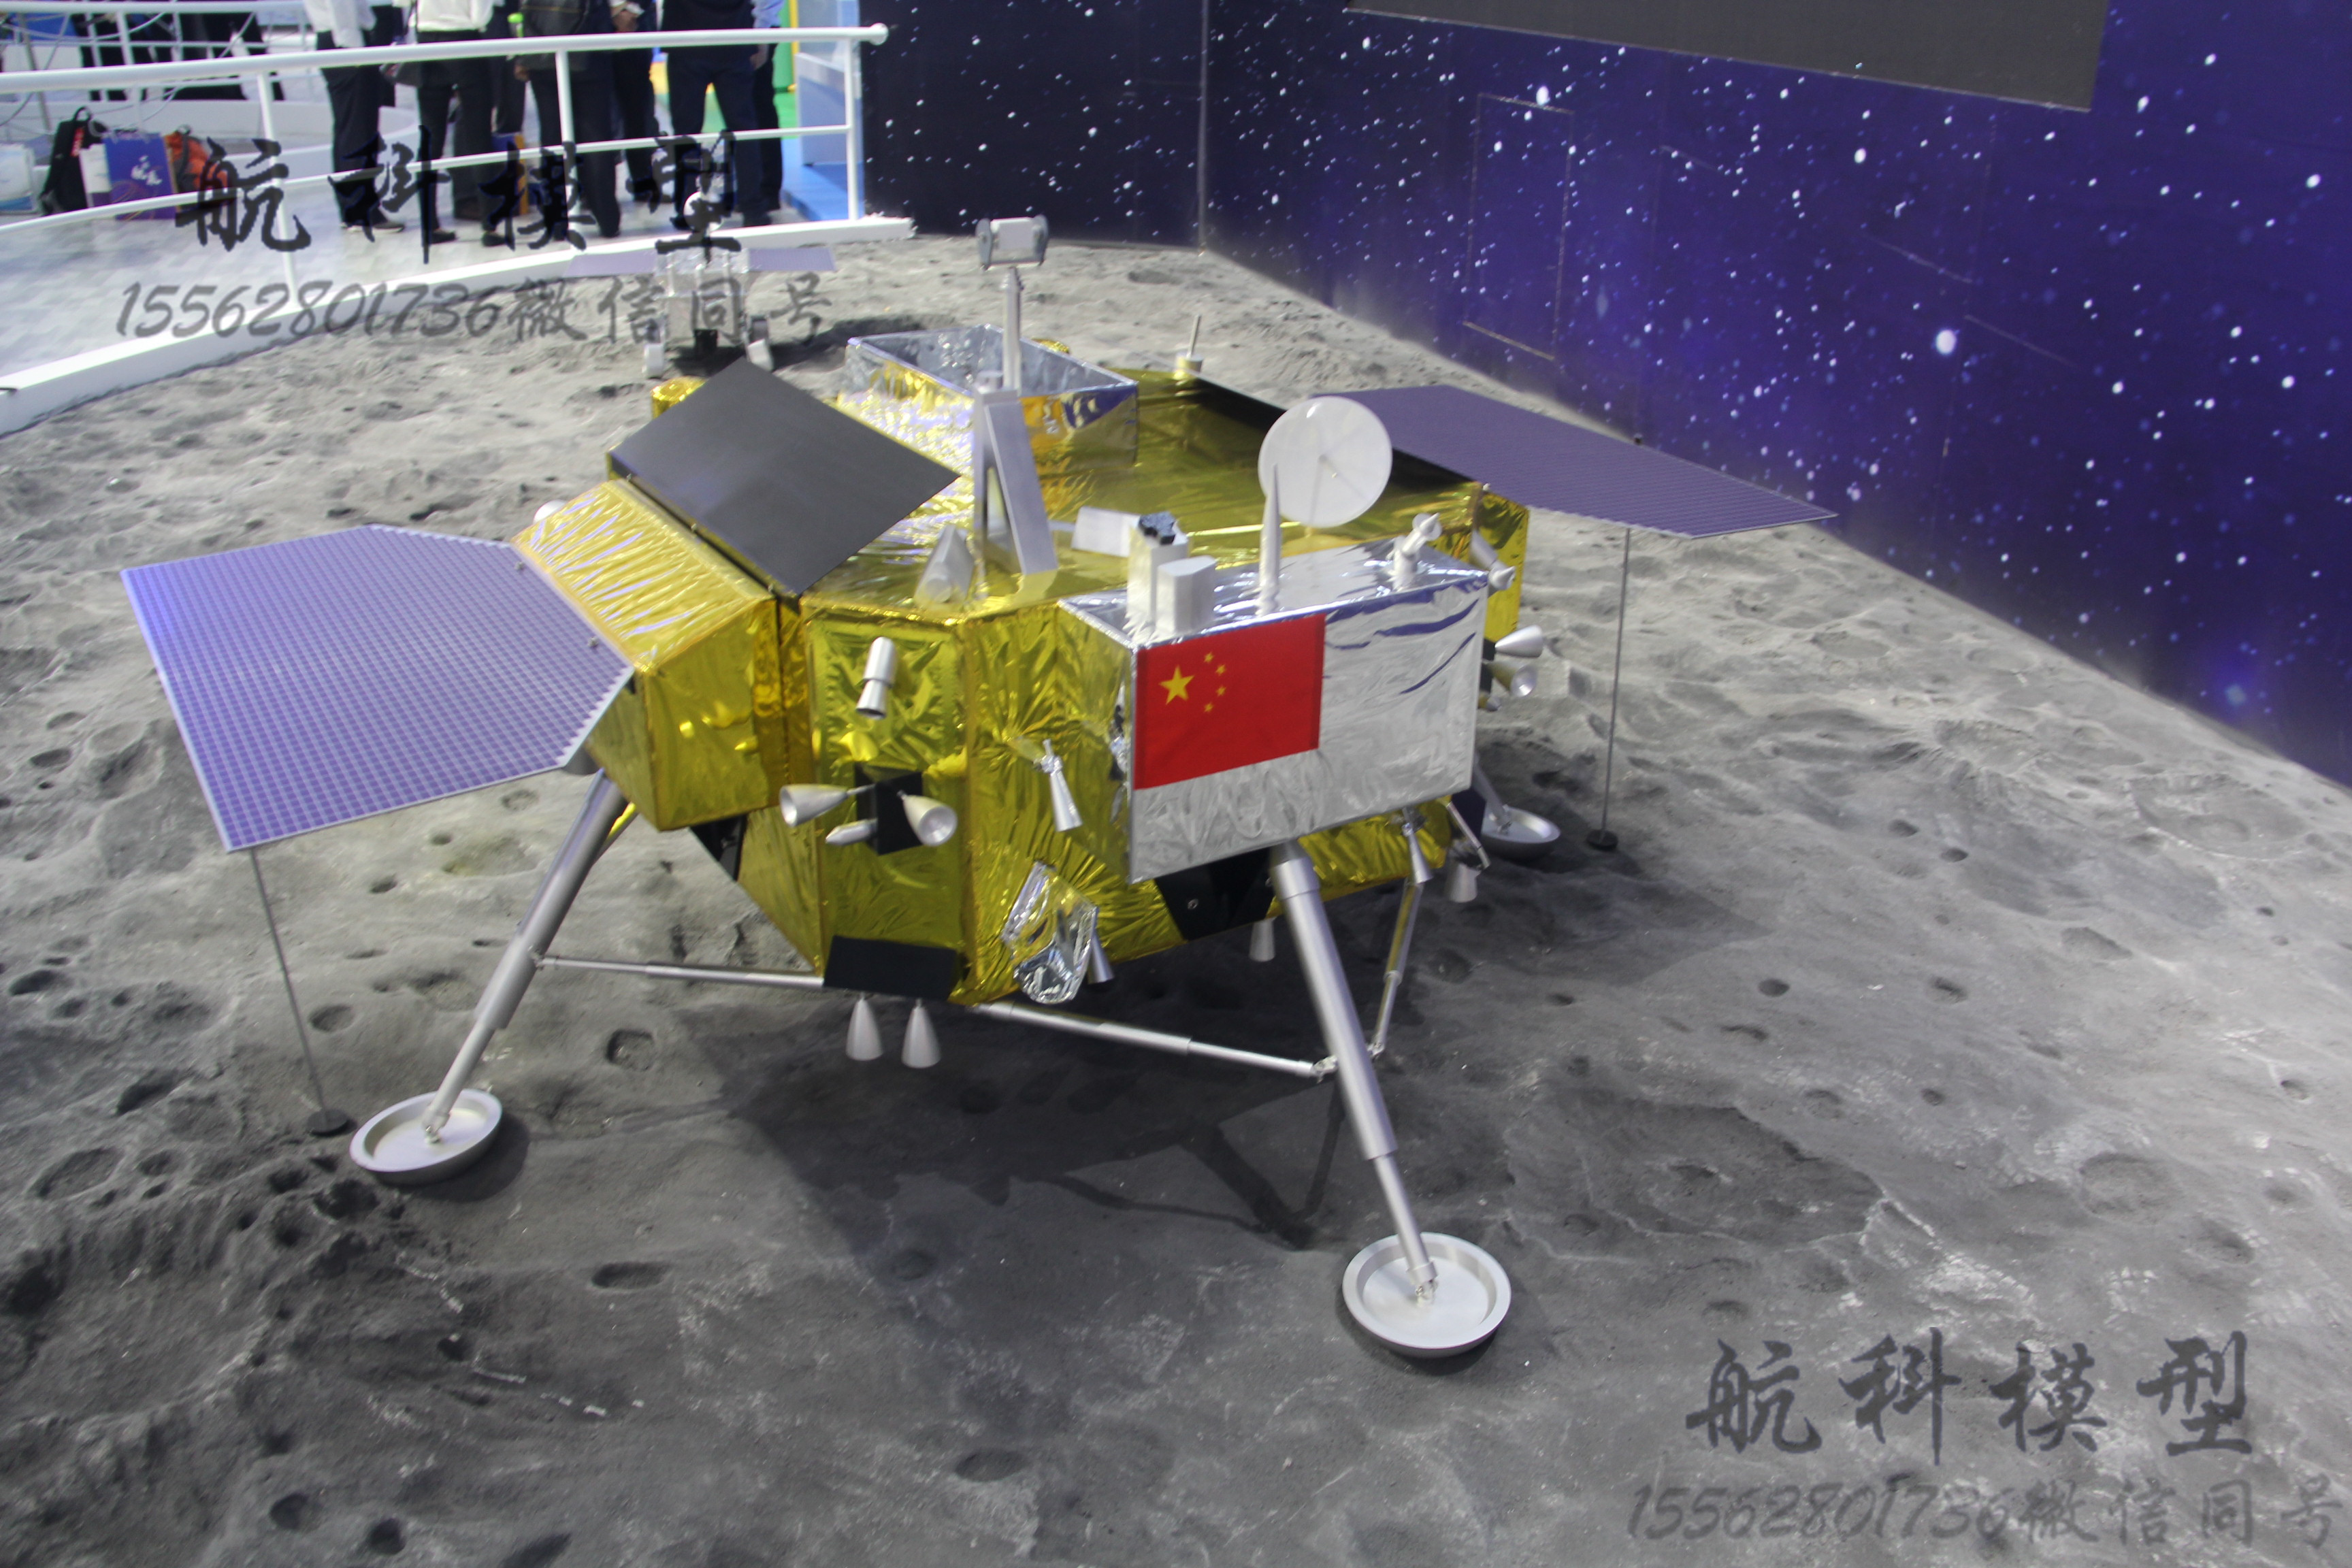 中国、月の裏側からのサンプルリターン「嫦娥6号」を5月に打ち上げへ–史上初 - UchuBiz